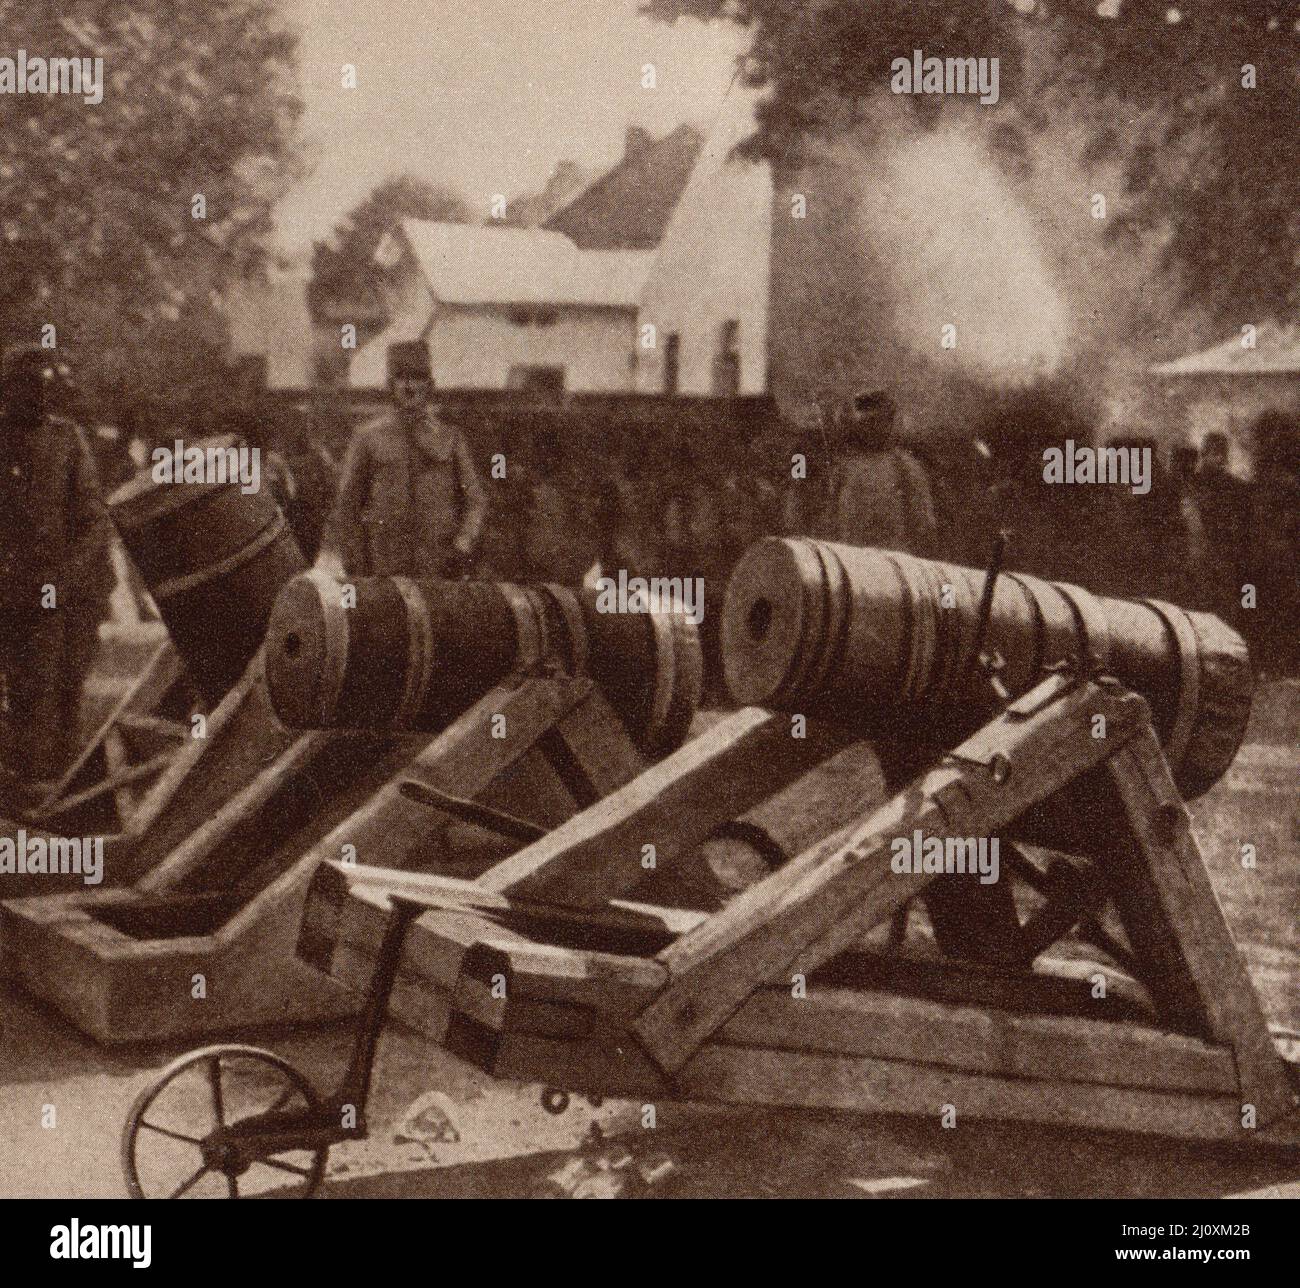 1st Guerra Mondiale; malte da trincea russe usate in Polonia, circa 1915. Fotografia in bianco e nero Foto Stock